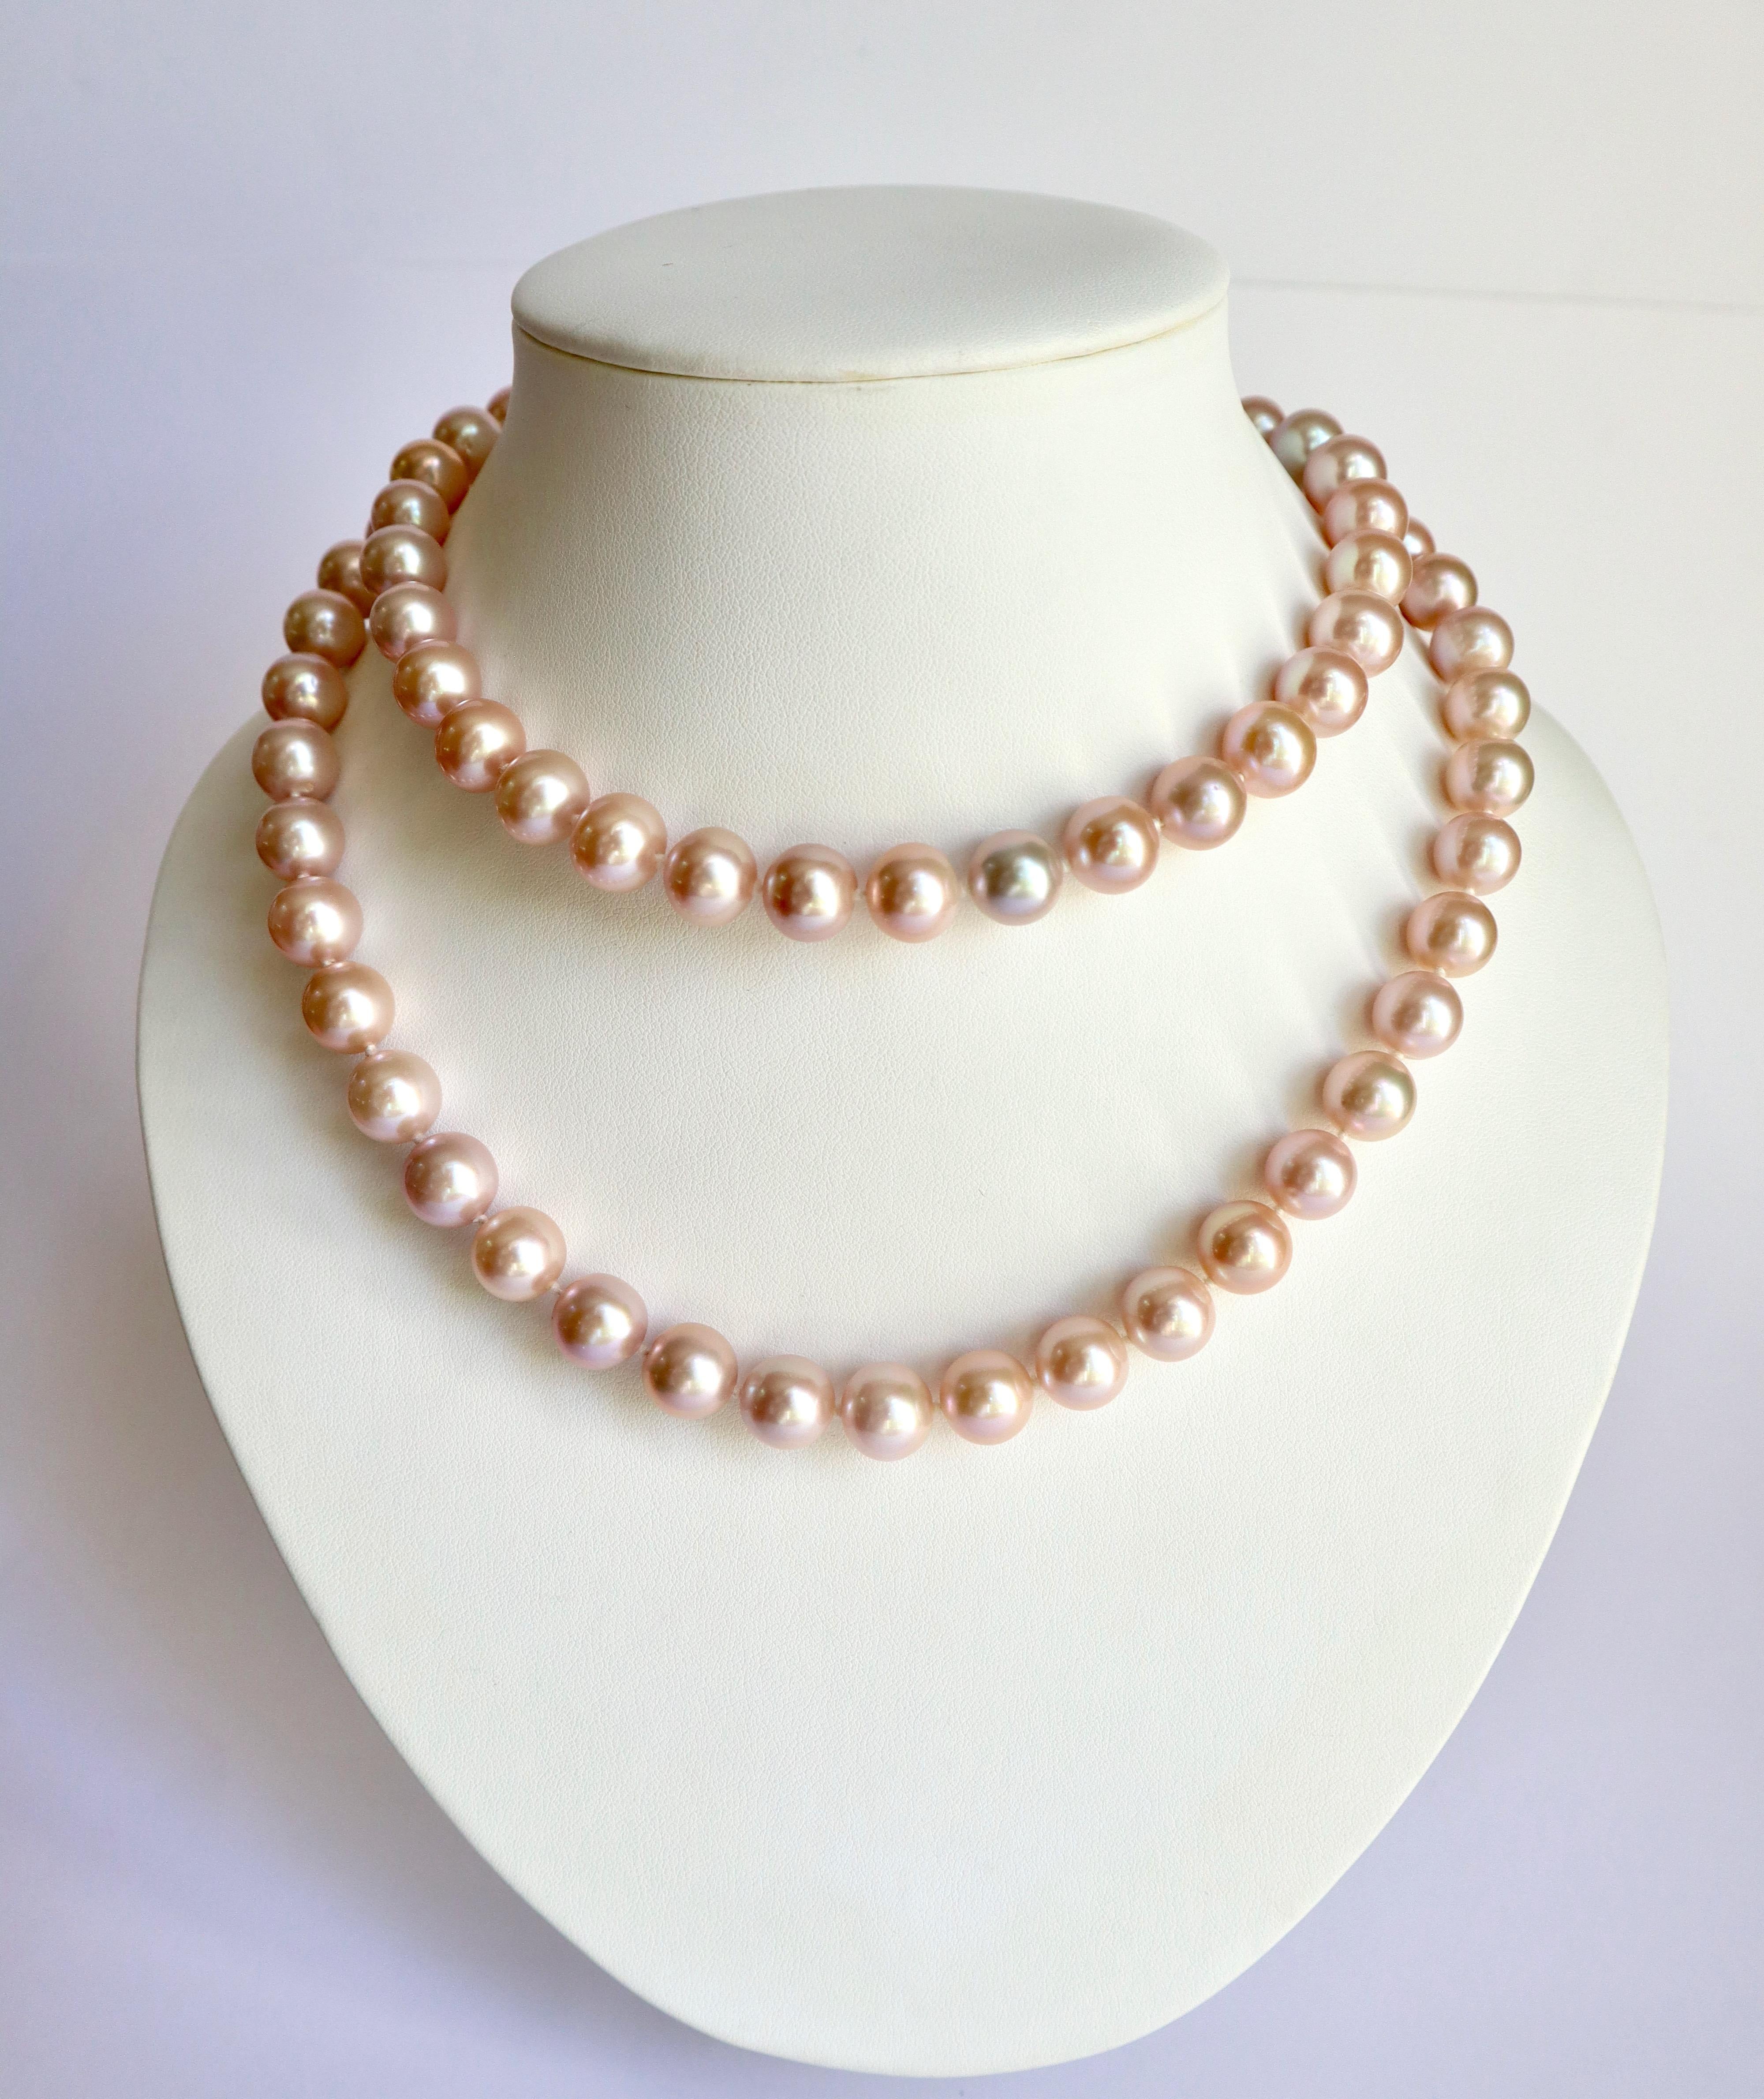 Lange Halskette aus schönen rosa Perlen, bestehend aus 76 wahrscheinlich behandelten großen rosa Zuchtperlen mit einem Durchmesser von 10,5 bis 11 mm.
Länge: 84 cm
Bruttogewicht: 131,9 g